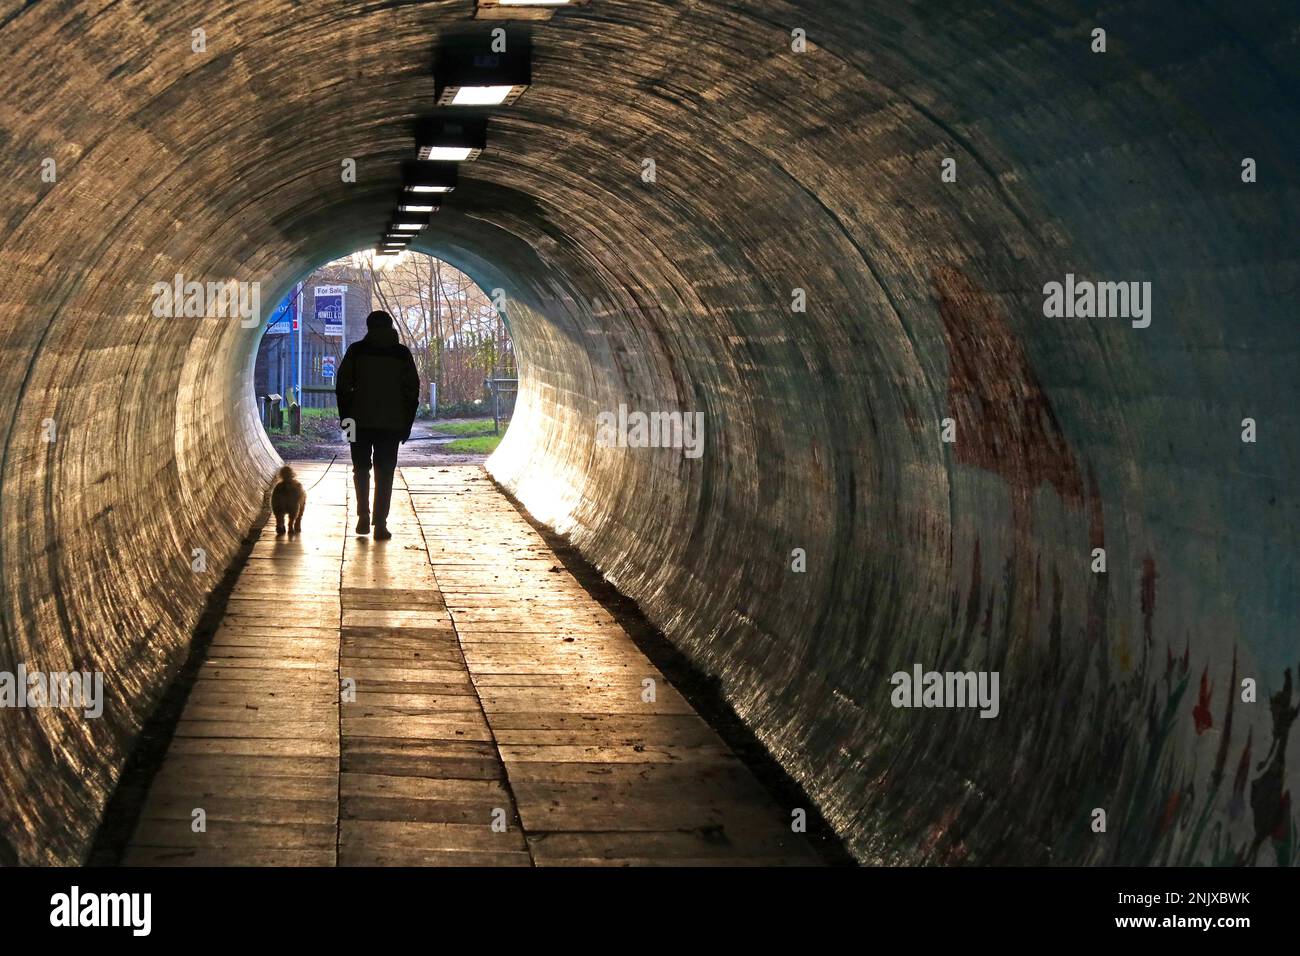 A50 Knutsford Road, tunnel piétonnier de Latchford, avec un homme marchant son chien en tête, South Warrington, Cheshire, Angleterre, Royaume-Uni, WA4 Banque D'Images